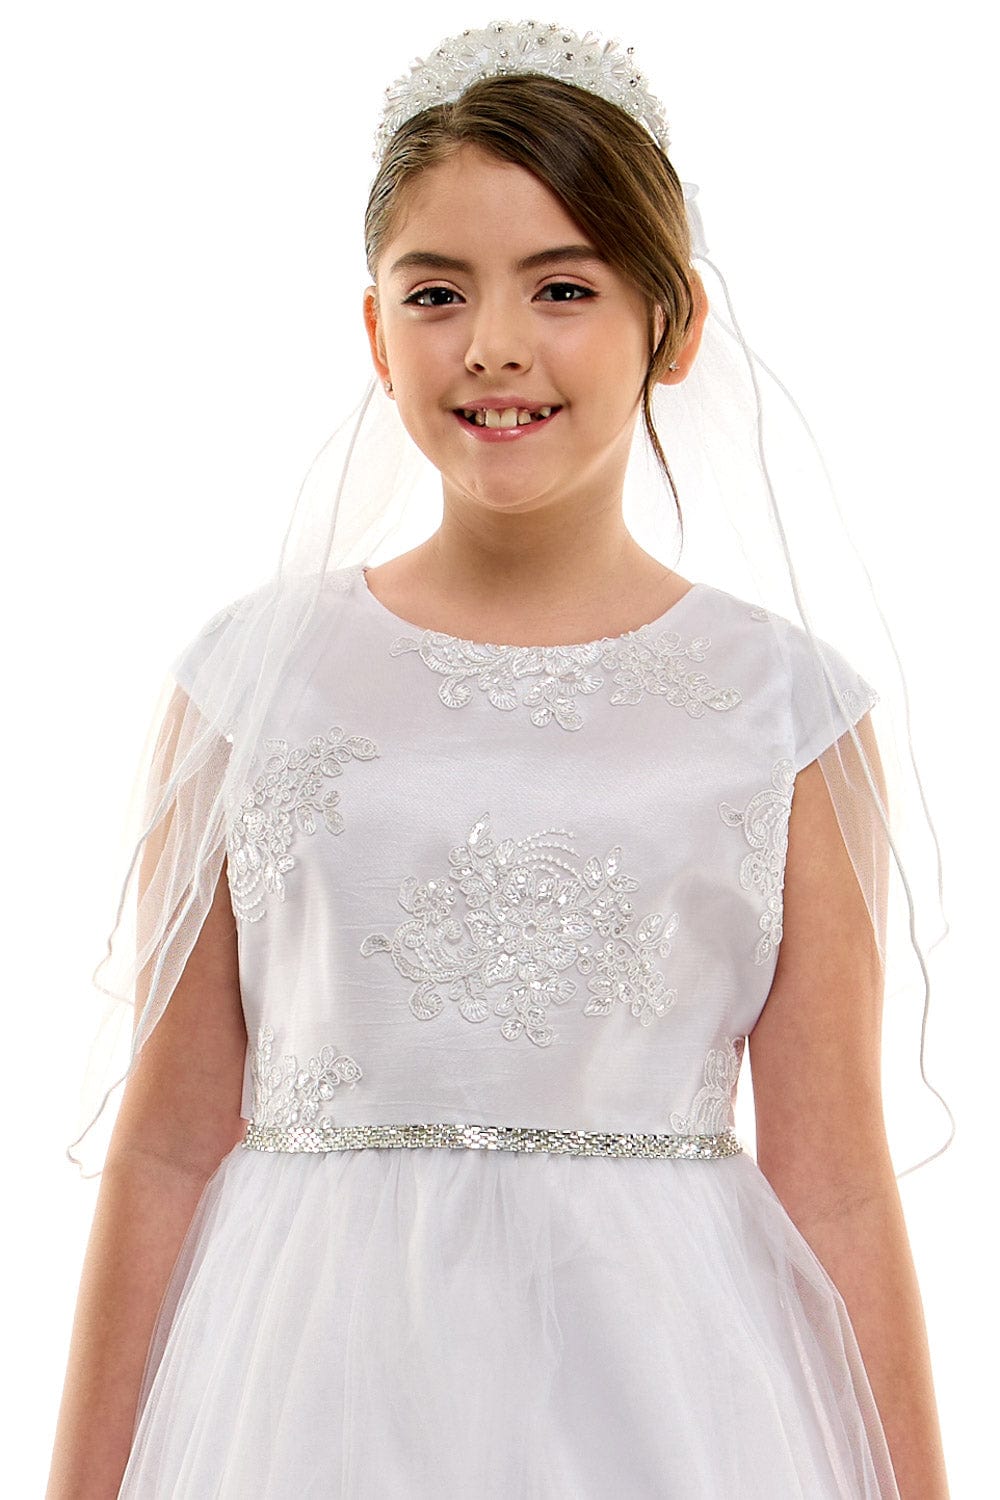 communion dresses Clara Dress White Petite Adele flower girl dresses